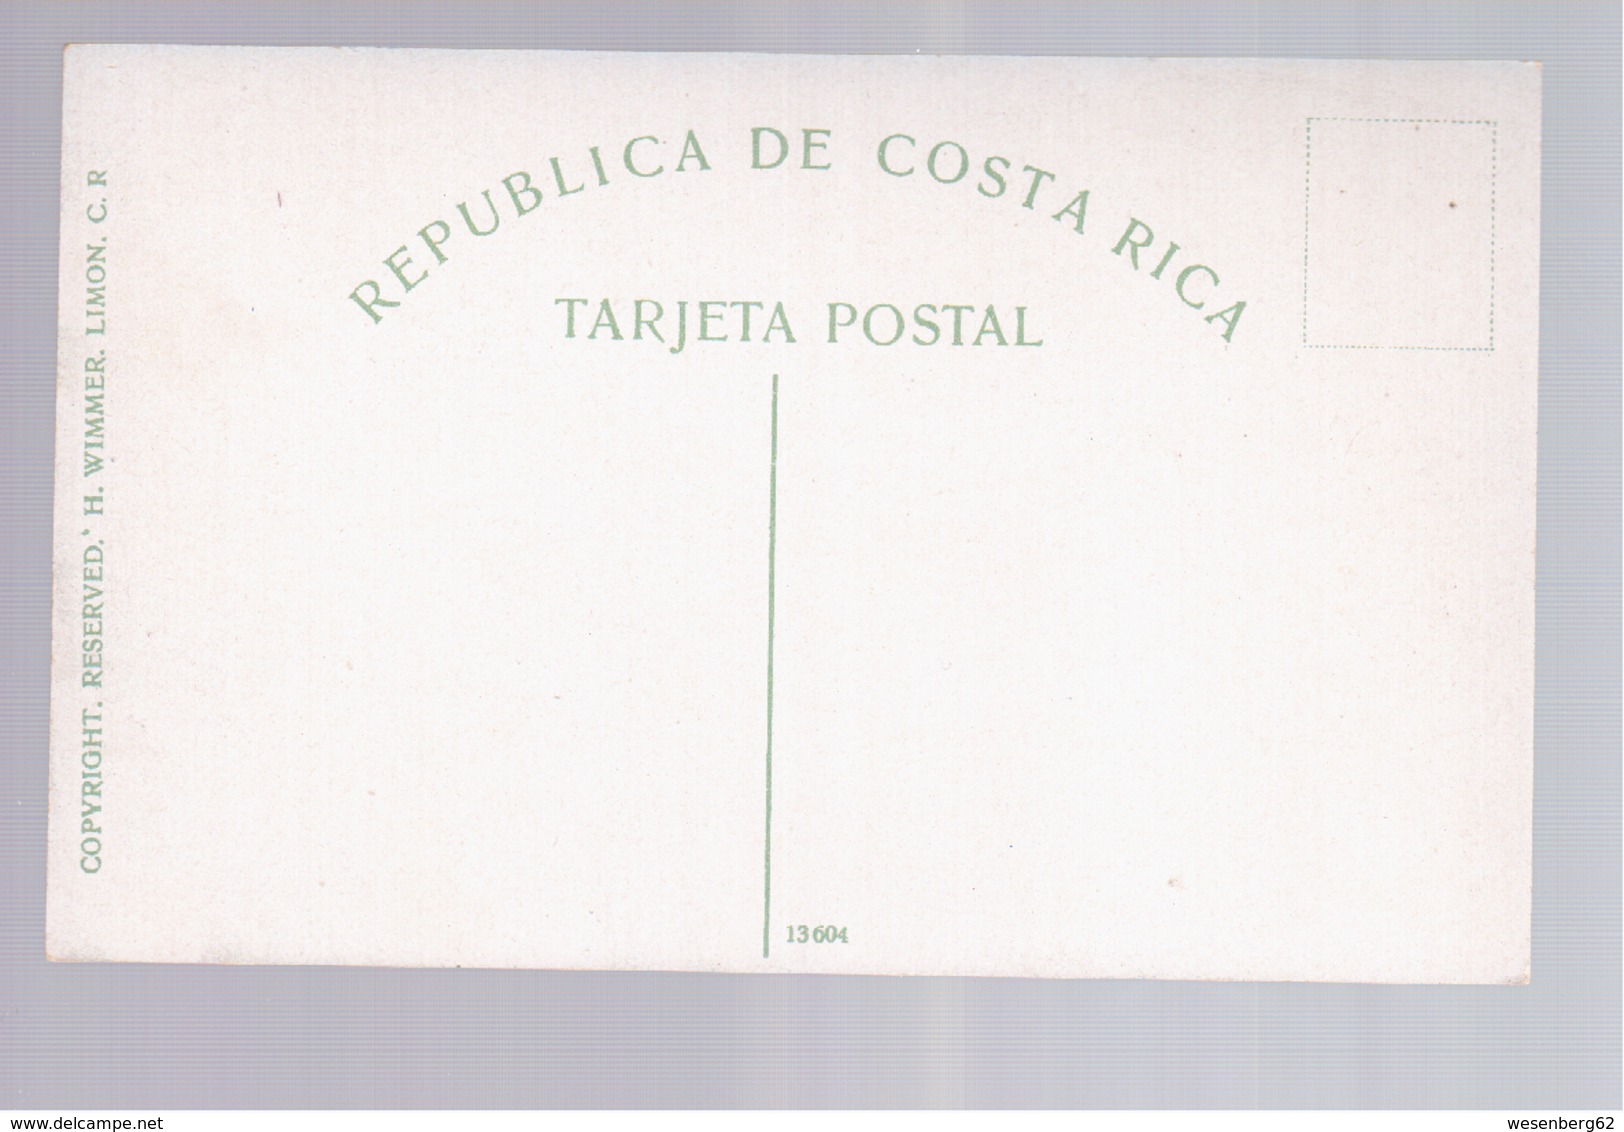 Costa Rica In The Crater Of Volcano "Irazu"  Ca 1920 Old Postcard - Costa Rica